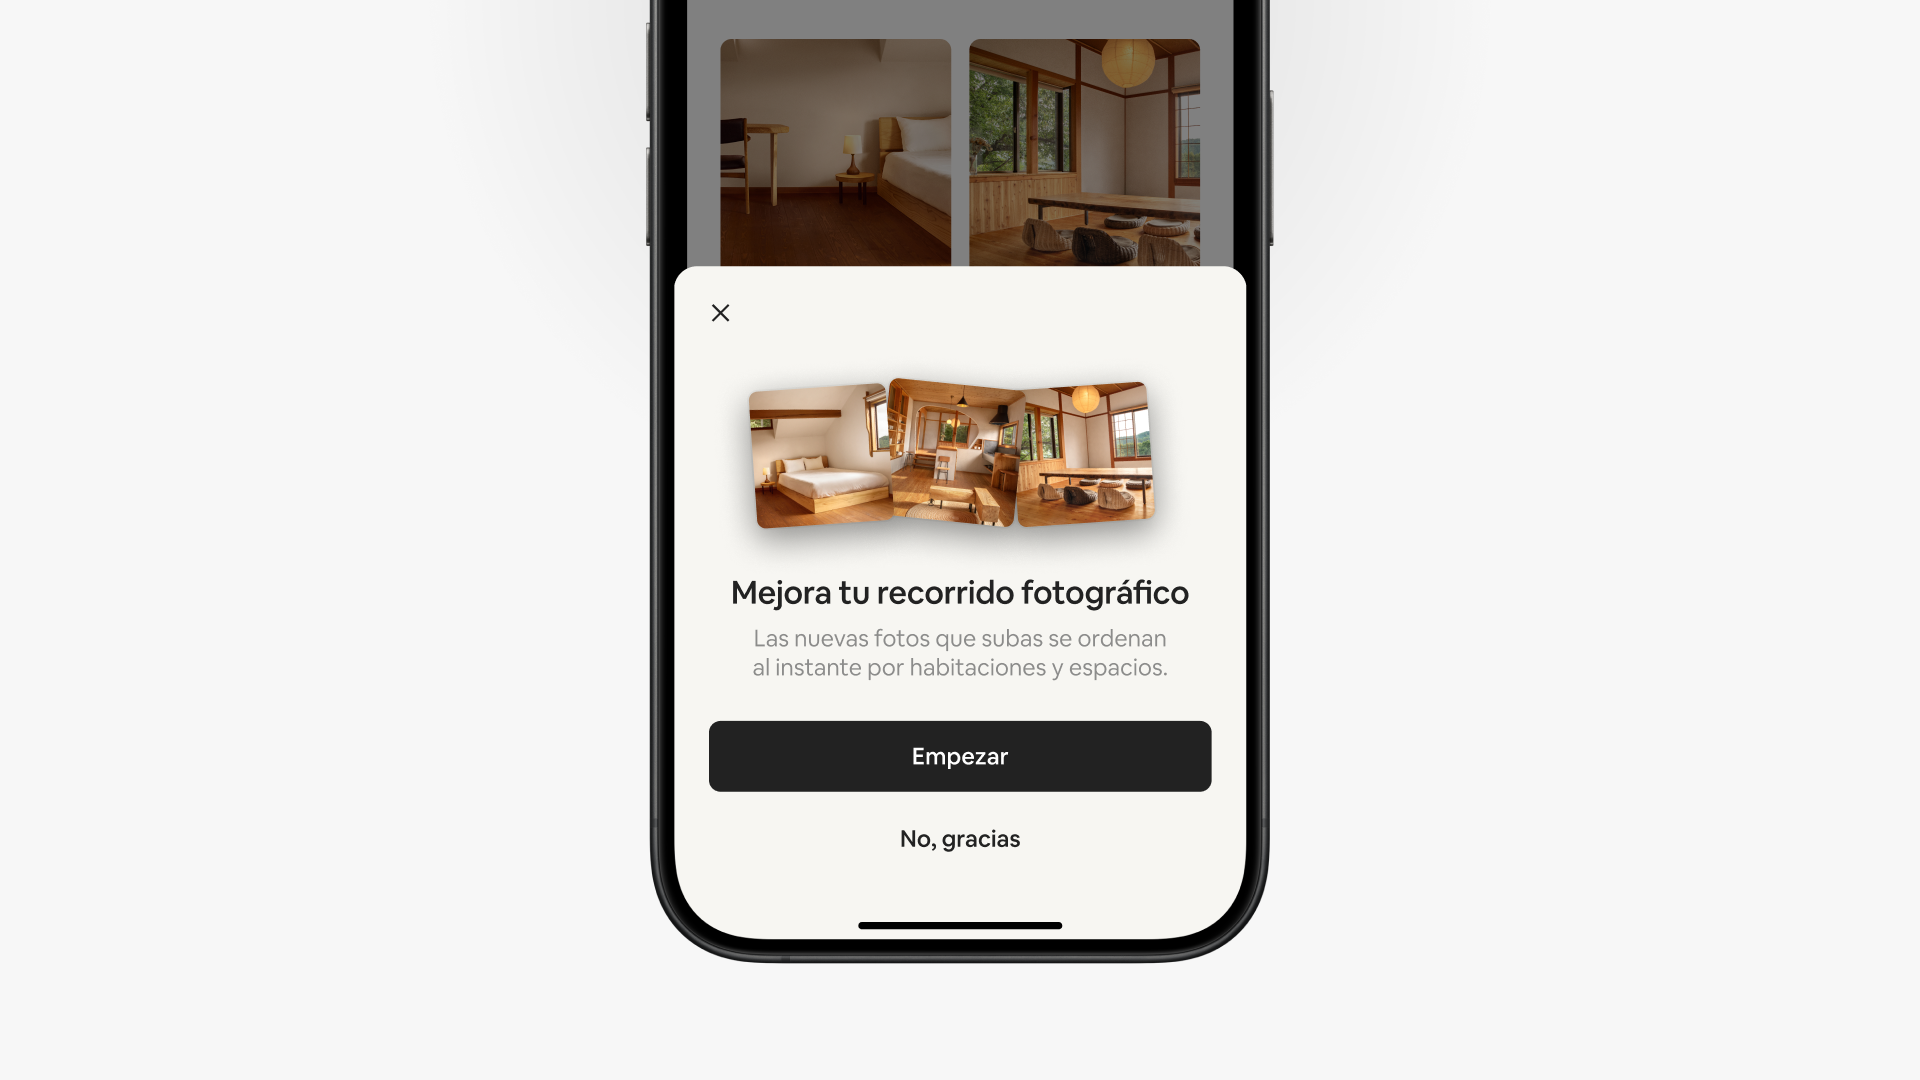 Una pantalla emergente en la app de Airbnb dice “Mejora tu recorrido fotográfico” sobre dos botones con distintas opciones: “Vamos” y “No, gracias”.